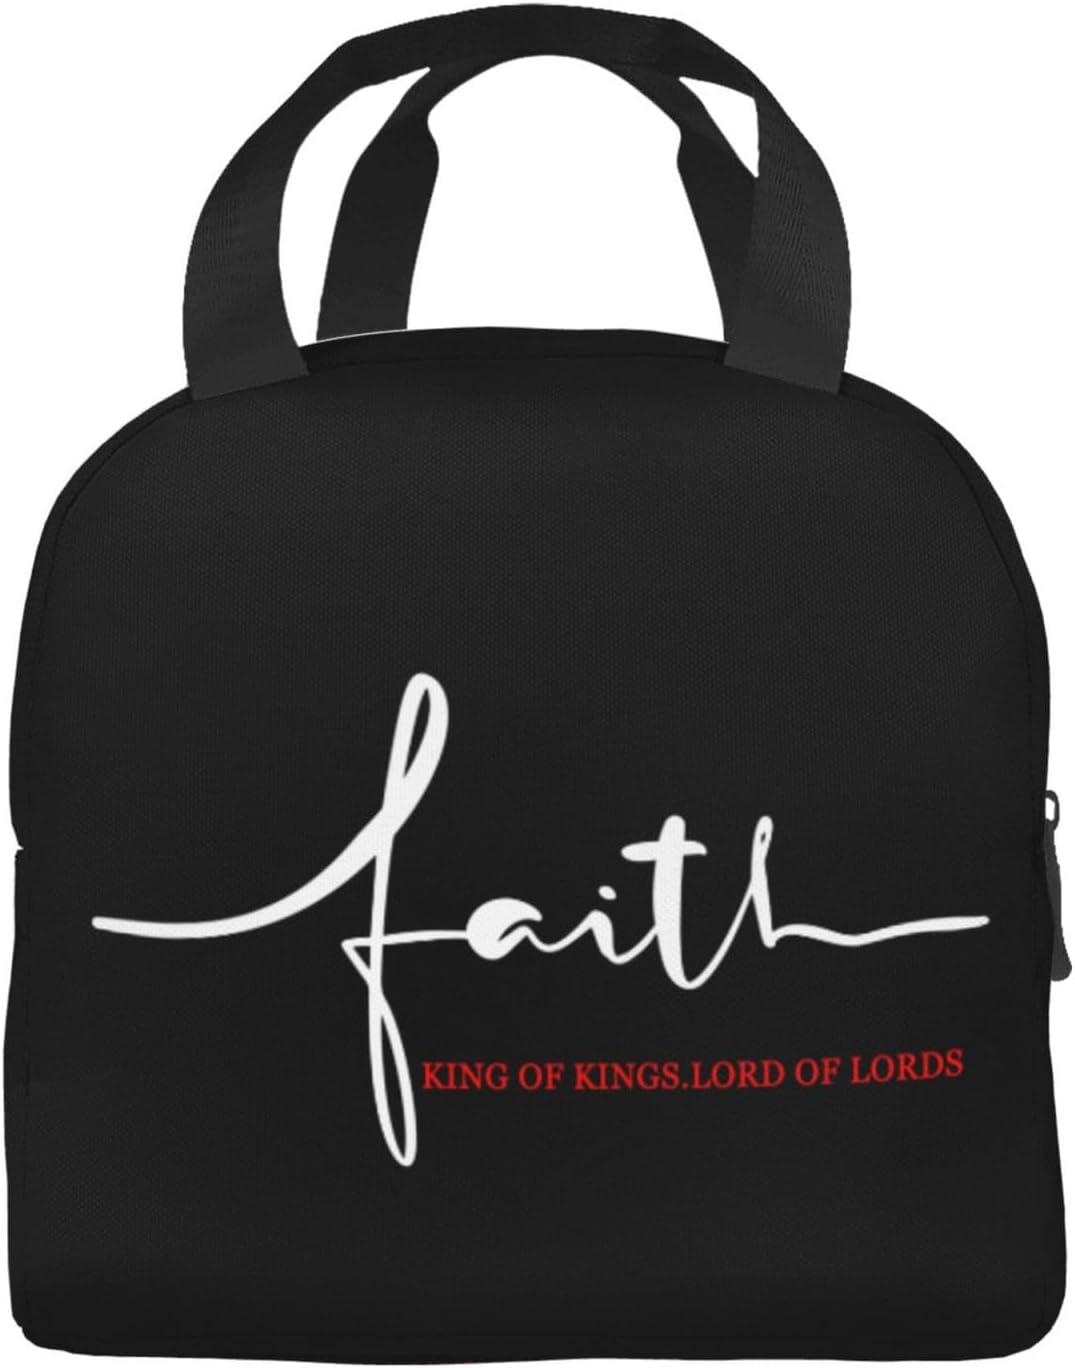 Faith Christian Lunch Bag claimedbygoddesigns